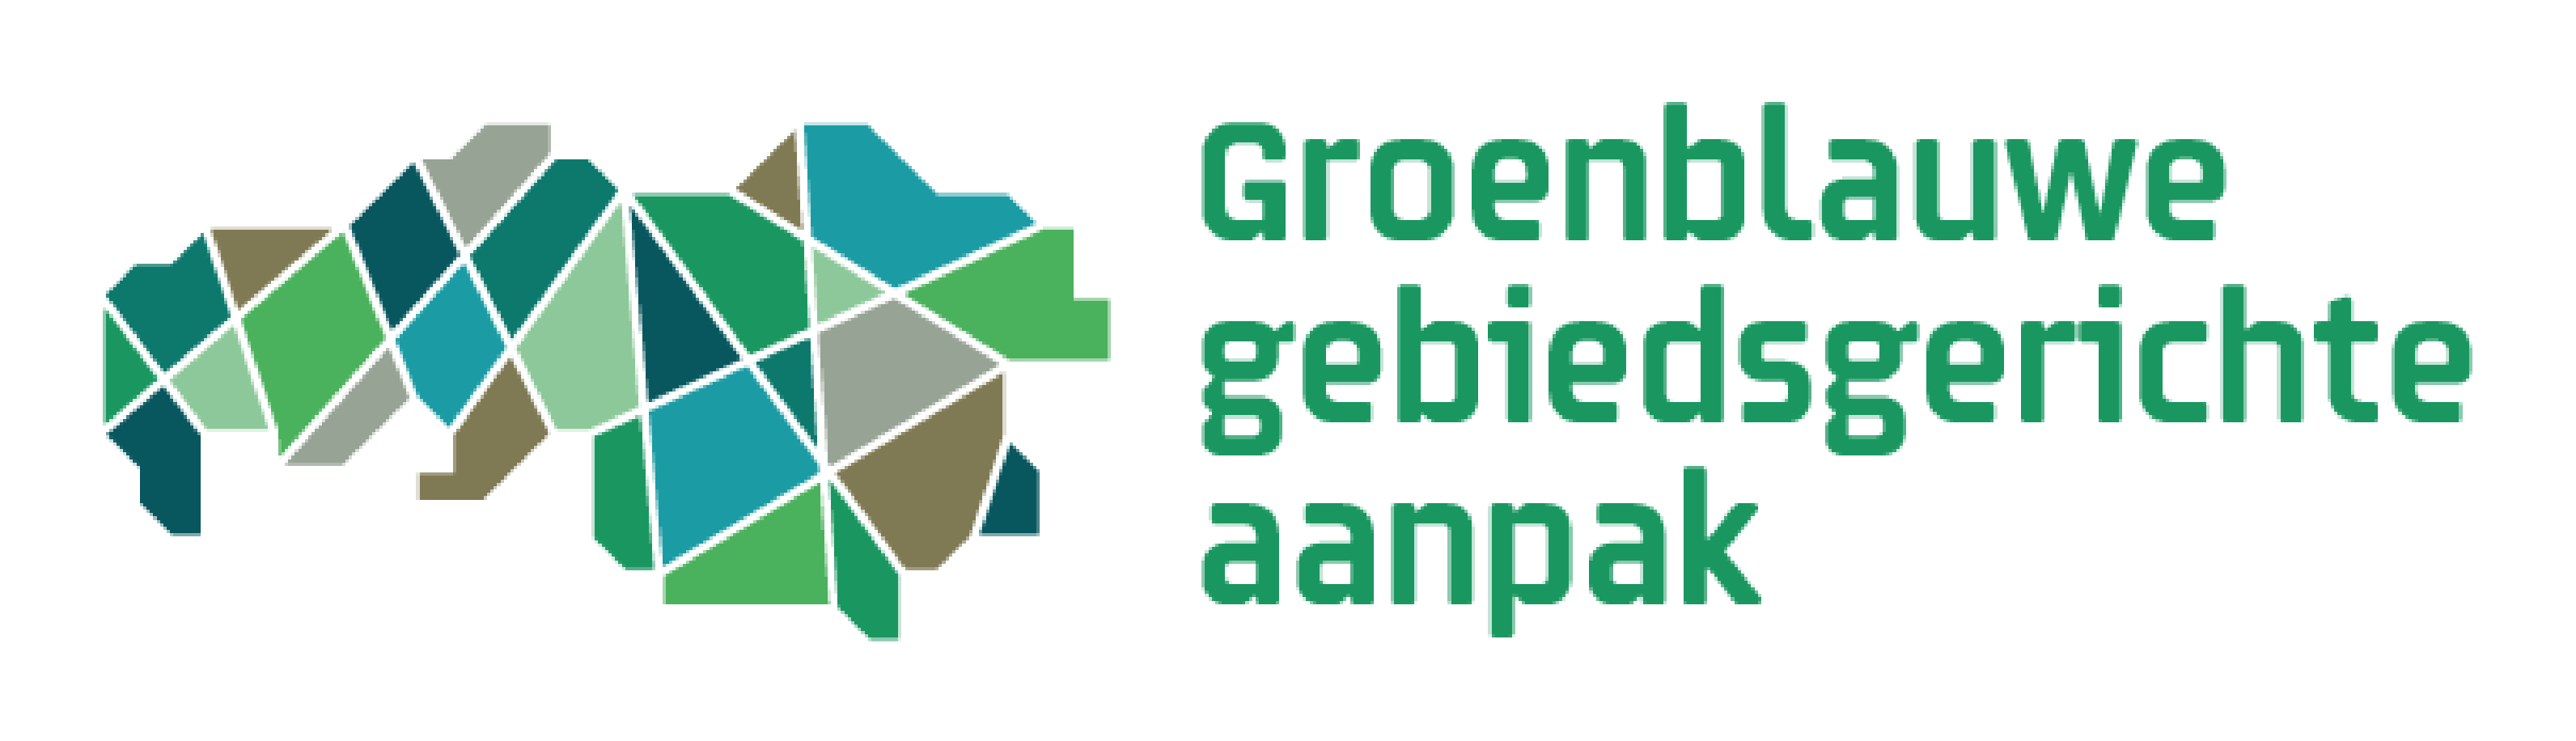 GGA groen blauw logo